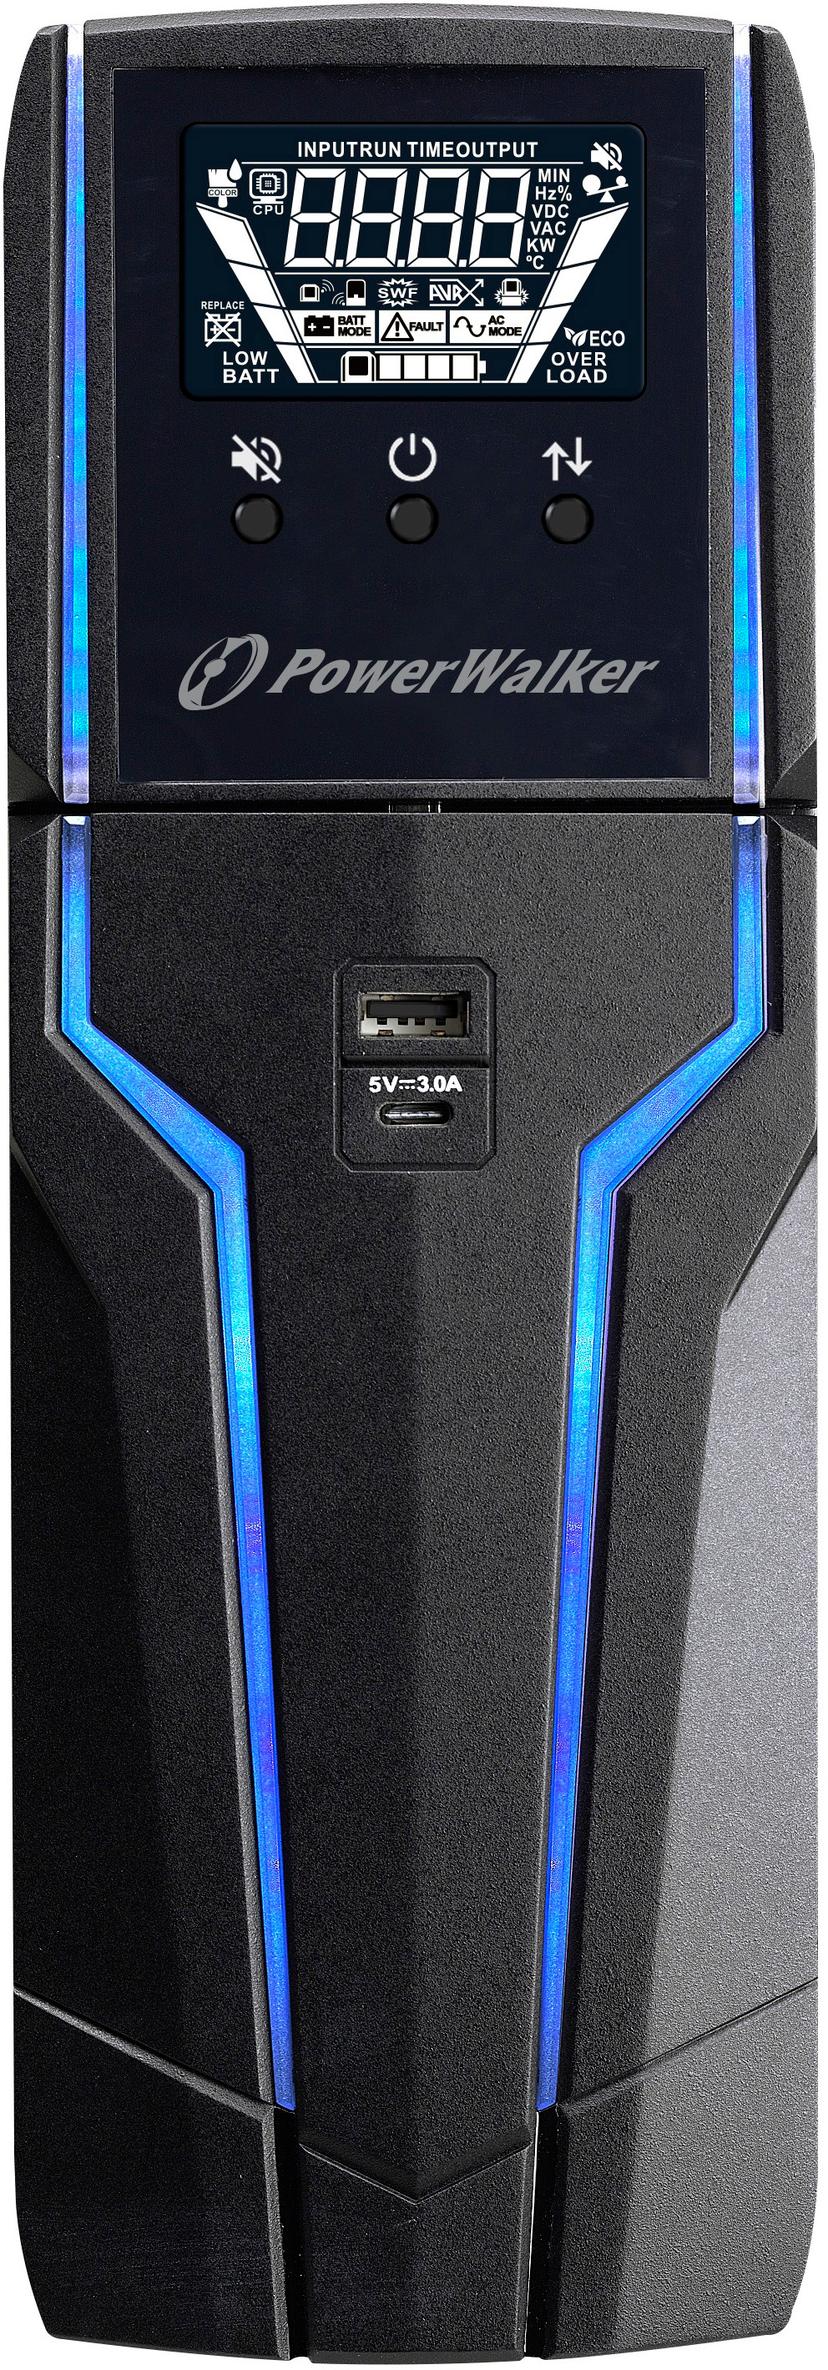 Powerwalker VI 1500 GXB Gaming UPS